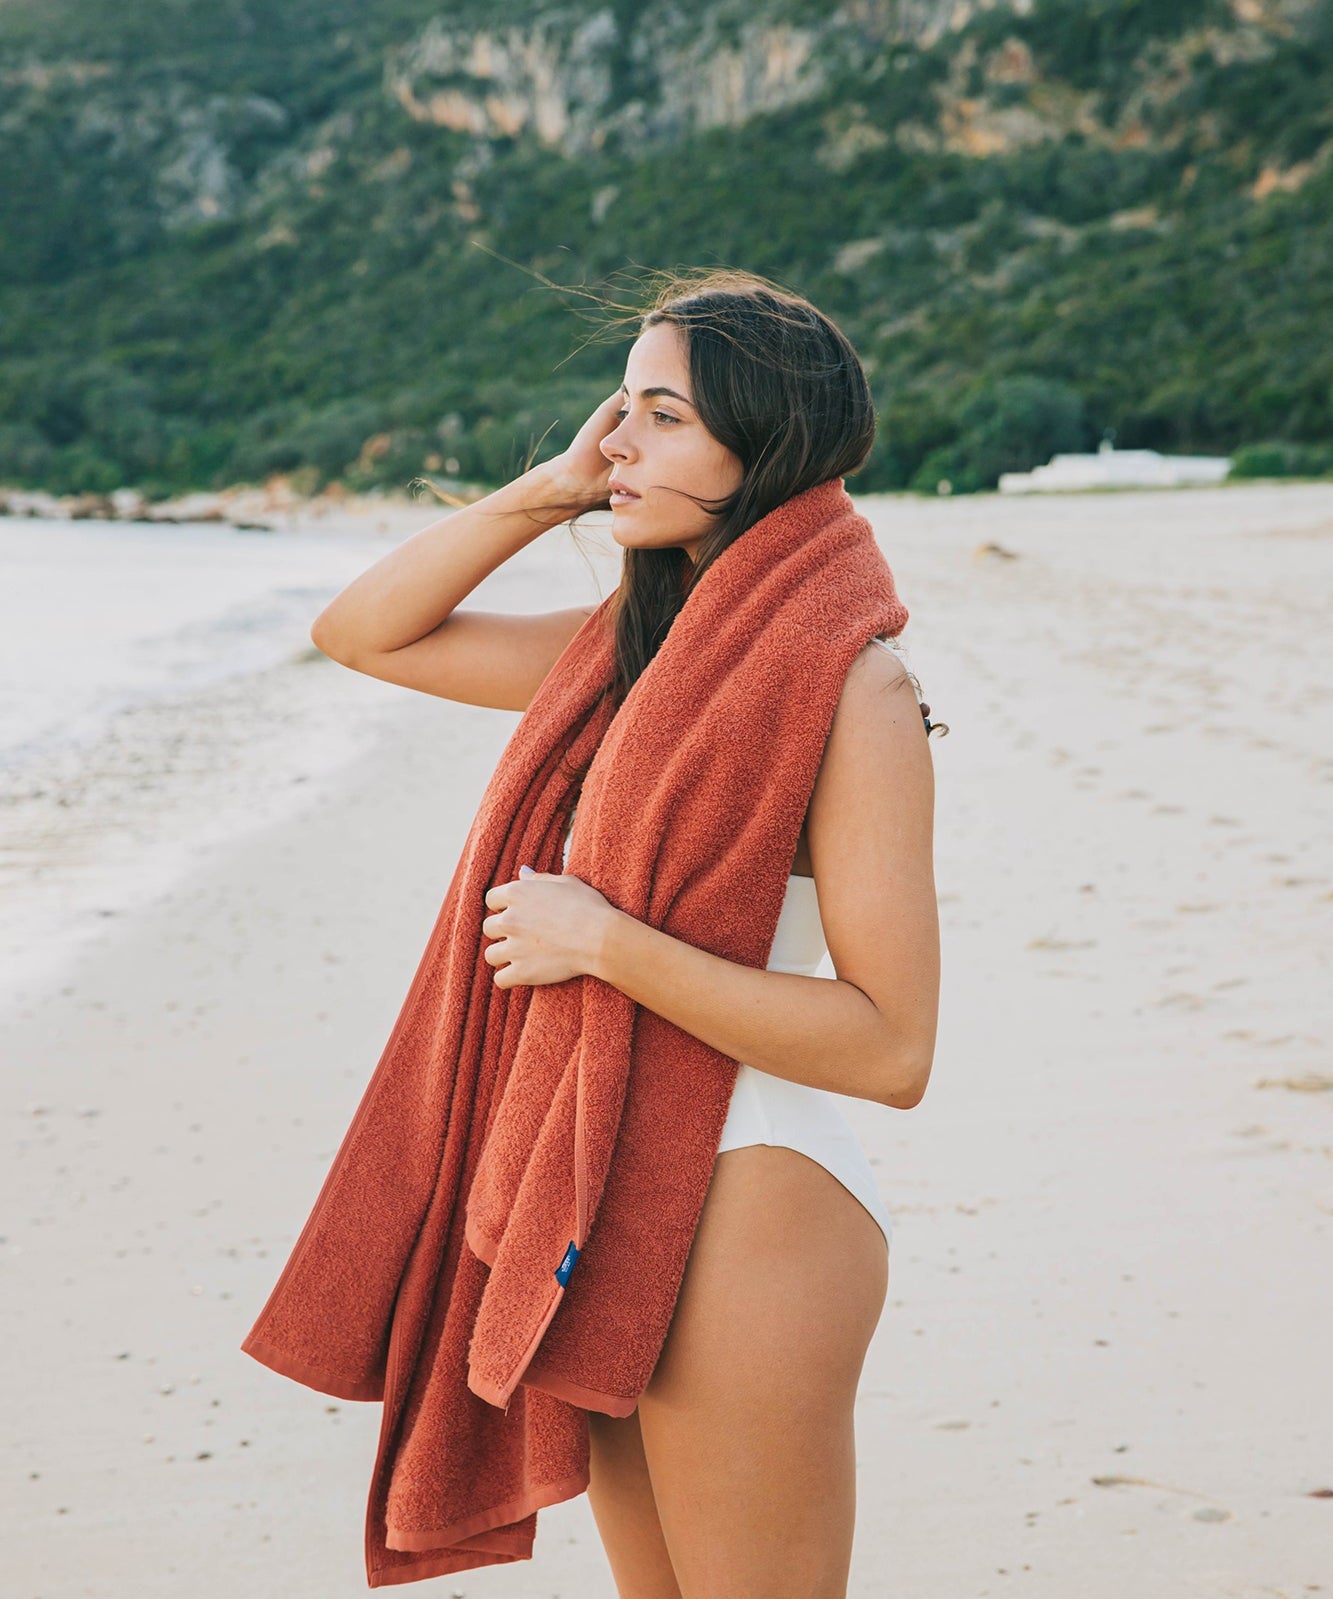 Mar Tranquilo beach towel - Torres Novas